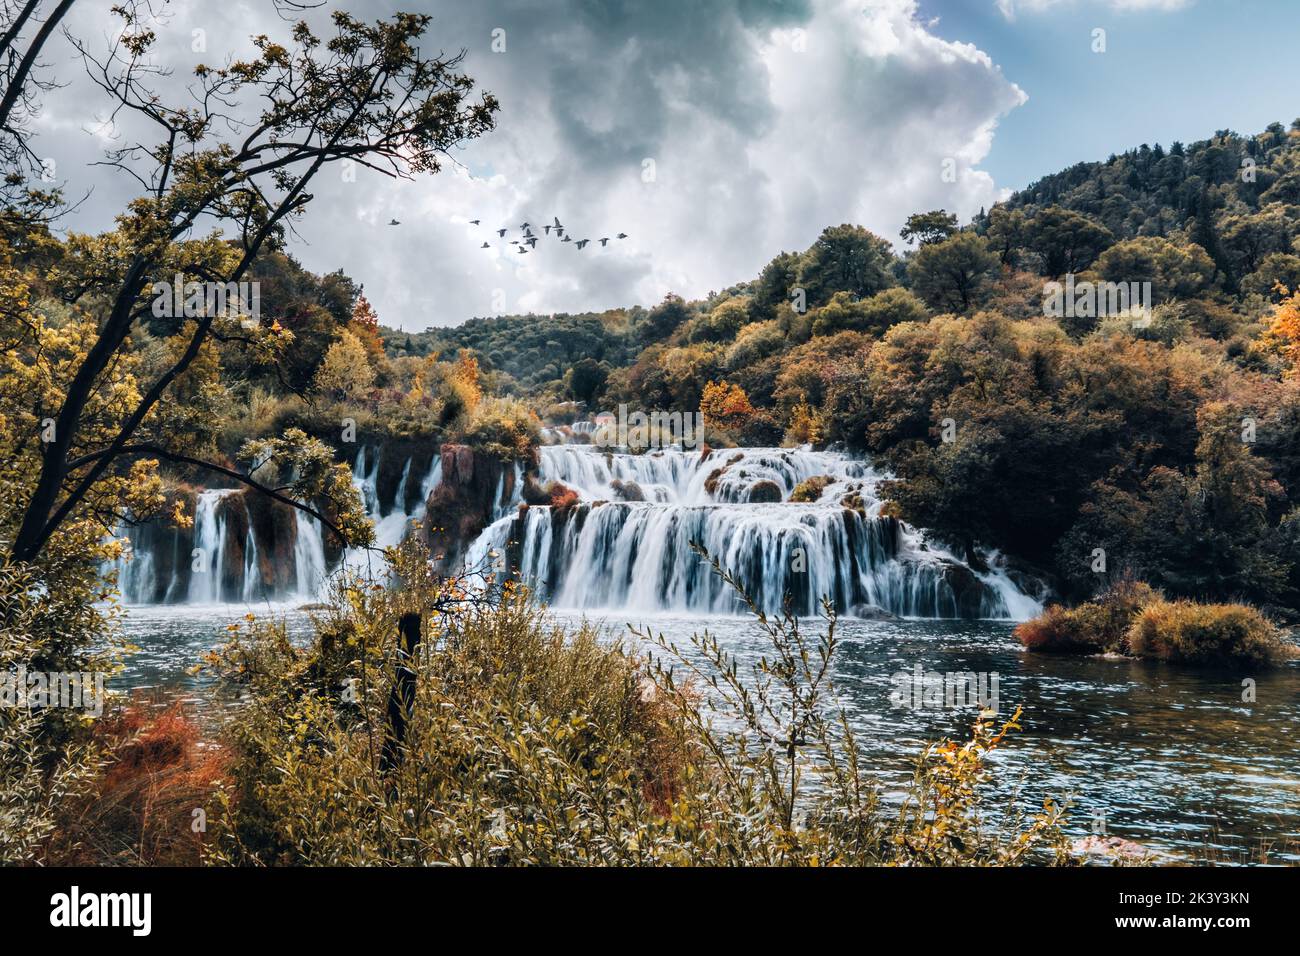 Belle cascade Skradinski Buk dans le parc national de Krka - Dalmatie Croatie, Europe. Scène fantastique du parc national de Krka en septembre Banque D'Images